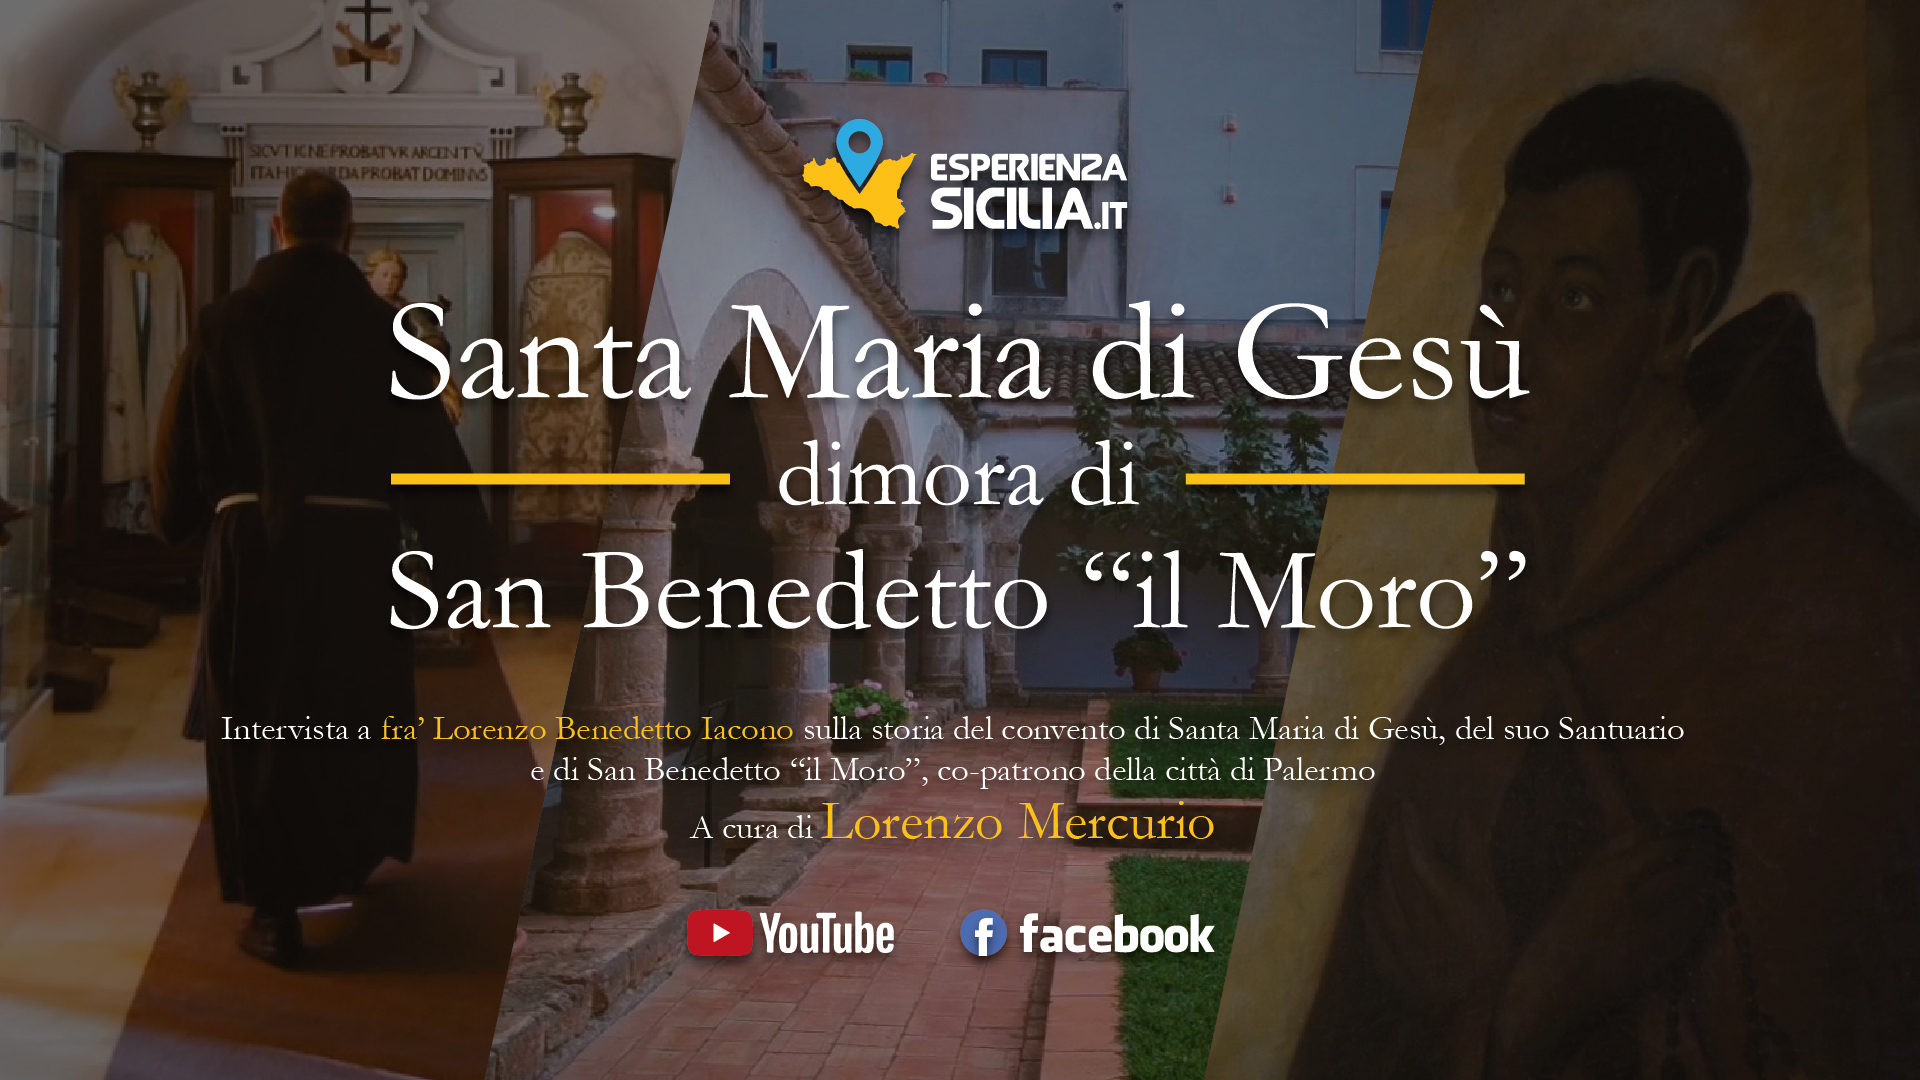 Grande attesa per il lancio del documentario sul santuario di San Benedetto "il Moro" di Palermo